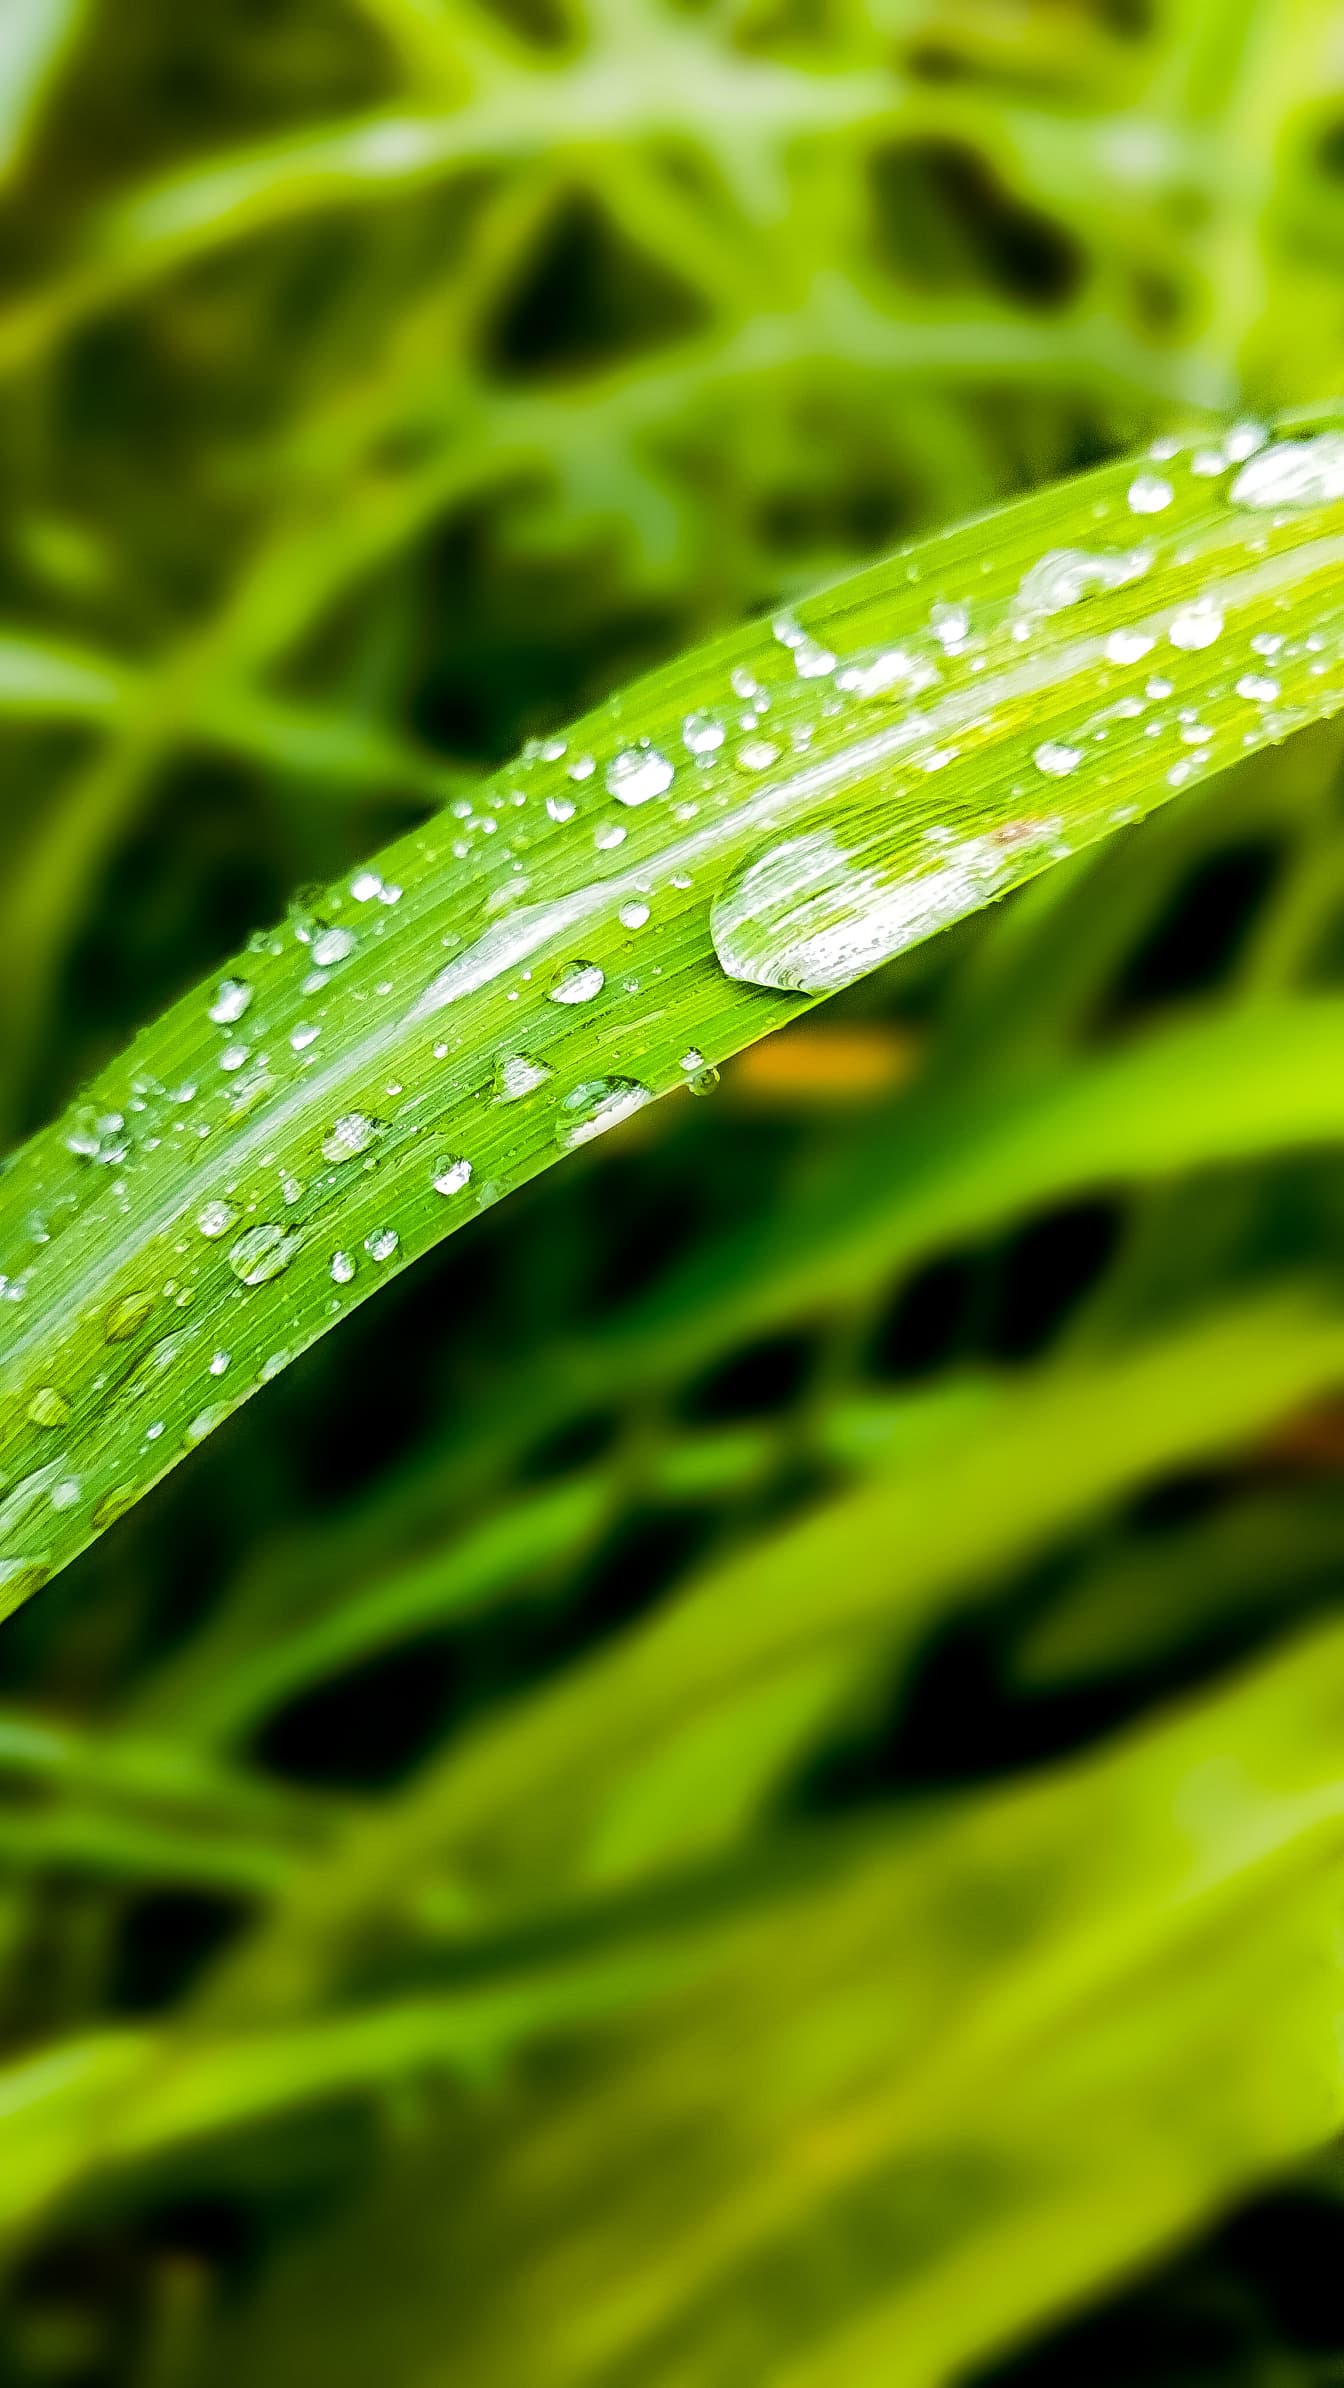 Dug vanddråber på grønligt gult græsblad